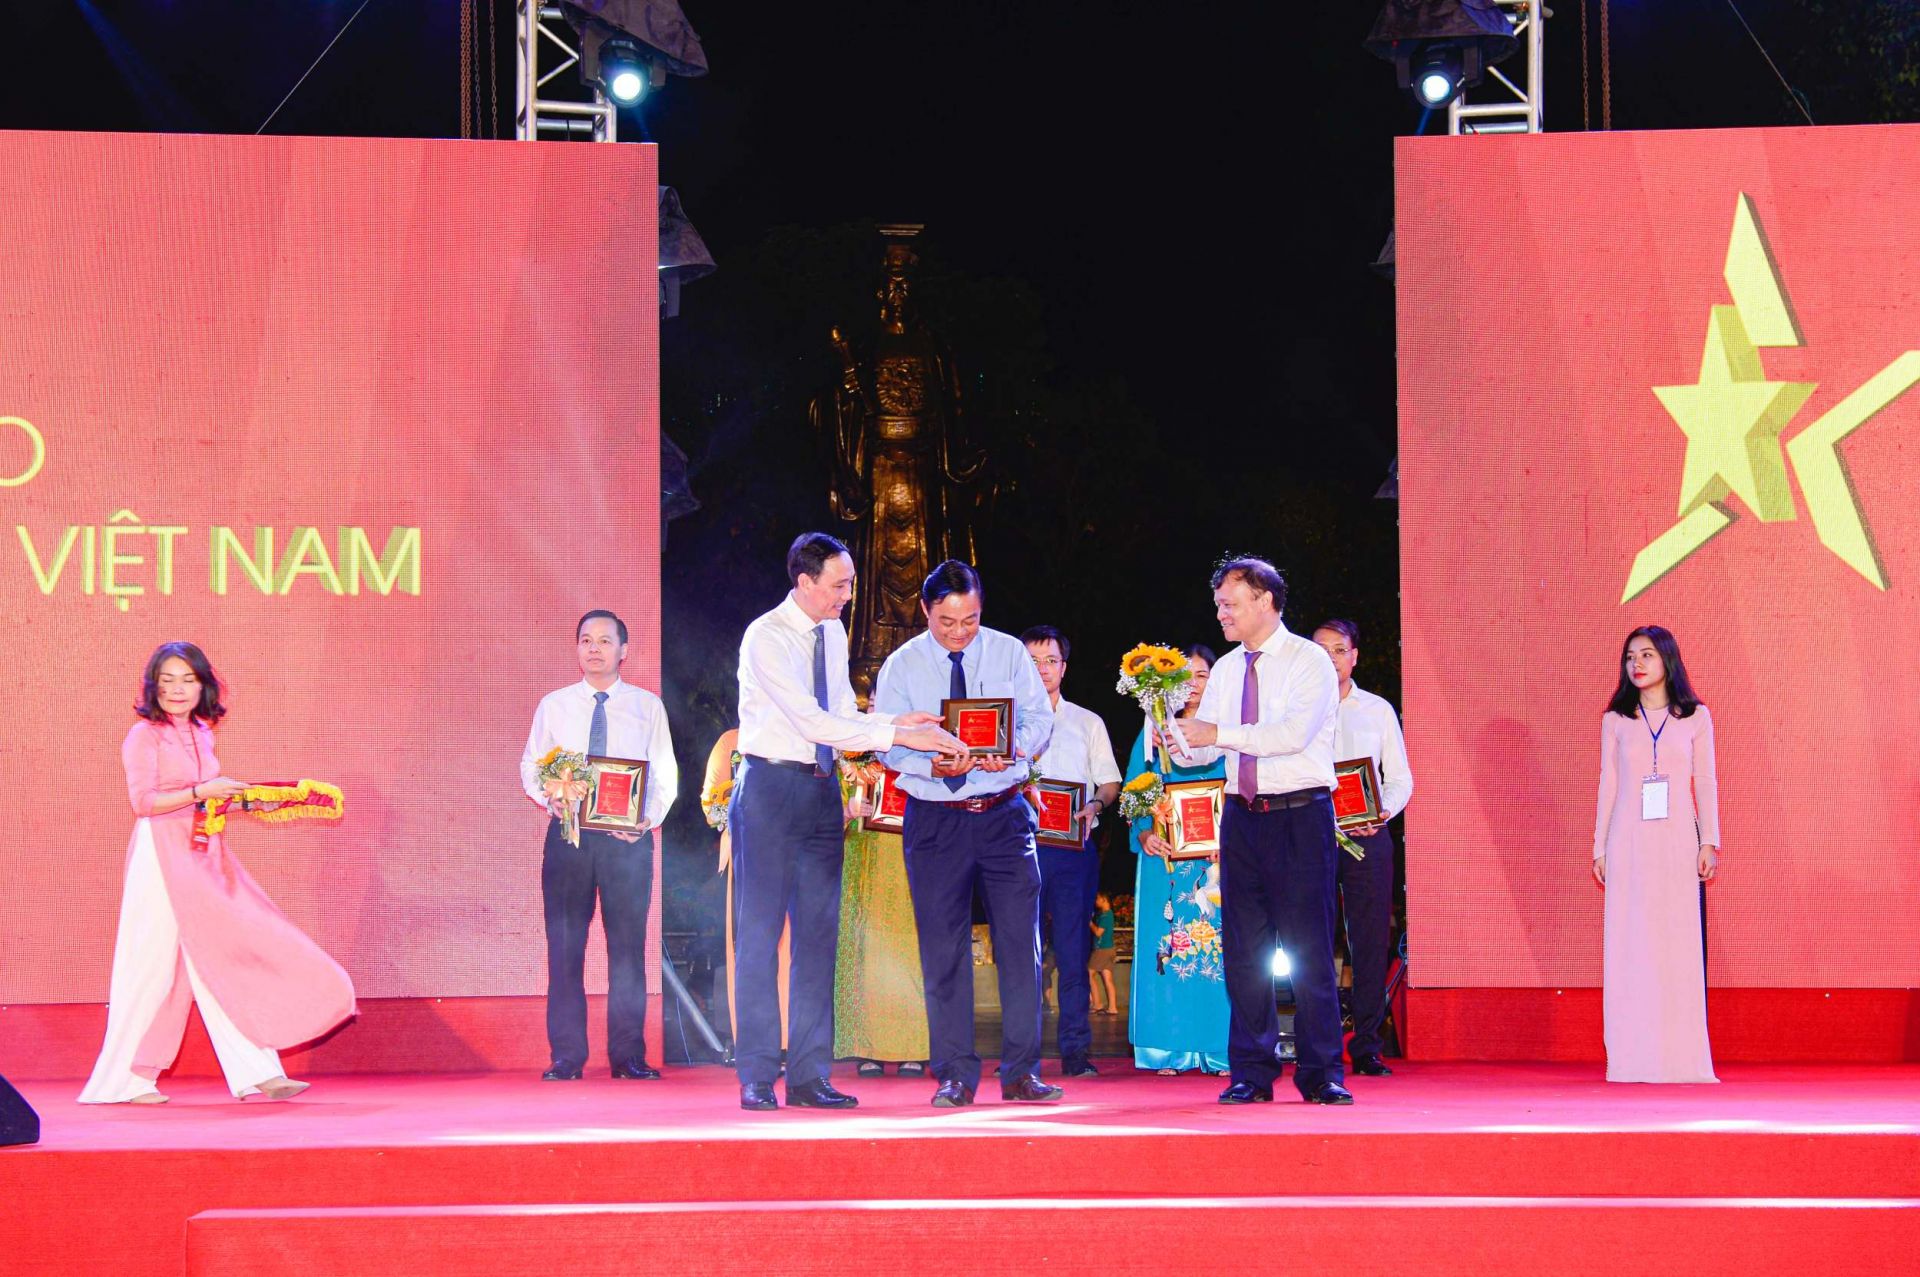 Phó Chủ tịch Ủy ban Trung ương Mặt trận Tổ quốc Việt Nam Phùng Khánh Tài (trái) và Thứ trưởng Bộ Công Thương Đỗ Thắng Hải (phải) trao kỷ niệm chương cho đại diện Sở Công Thương Sóc Trăng